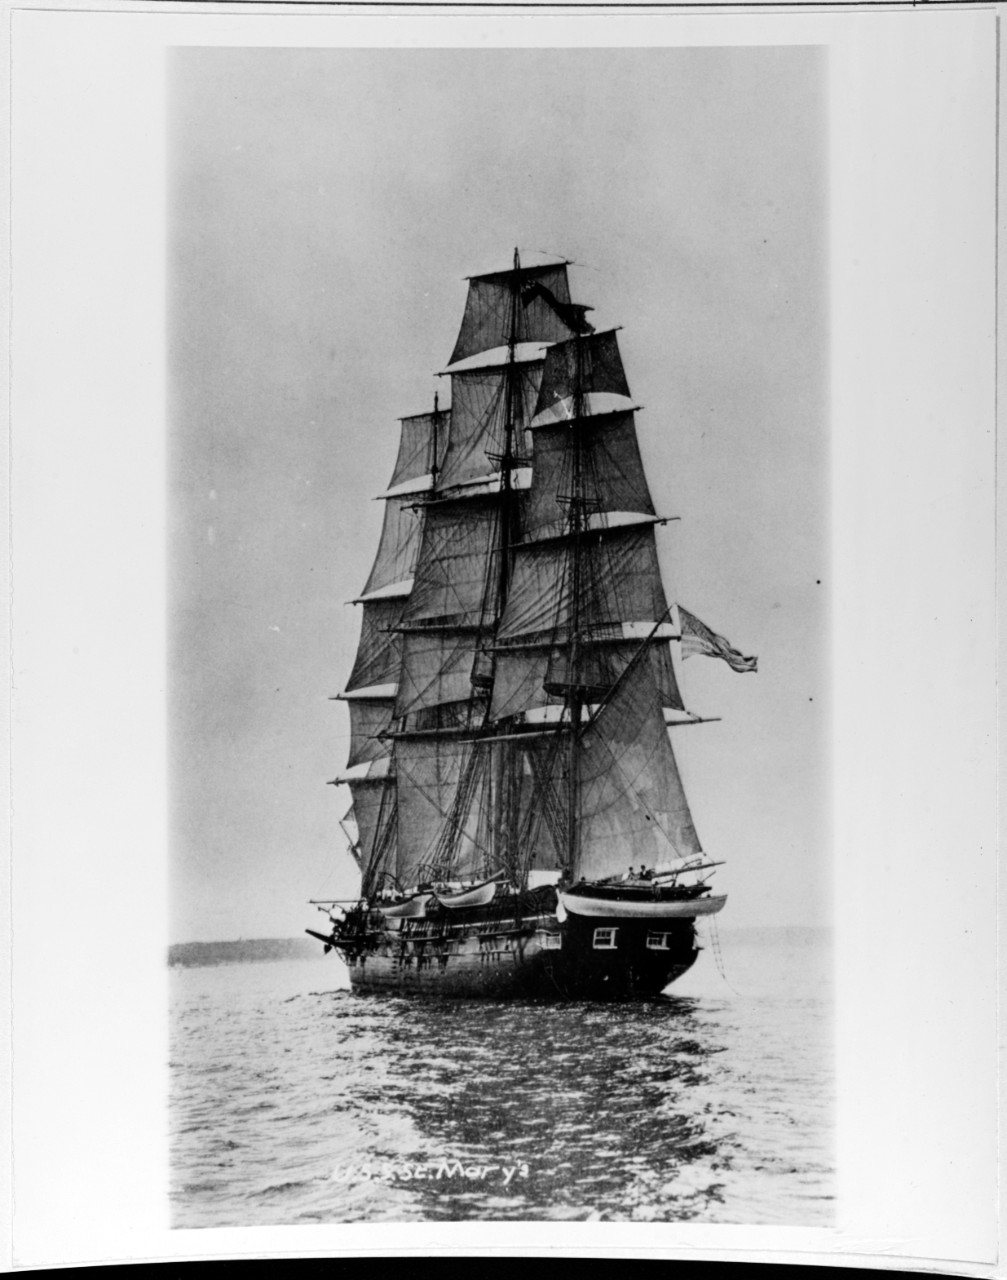 USS ST. MARY'S (1843-1908)